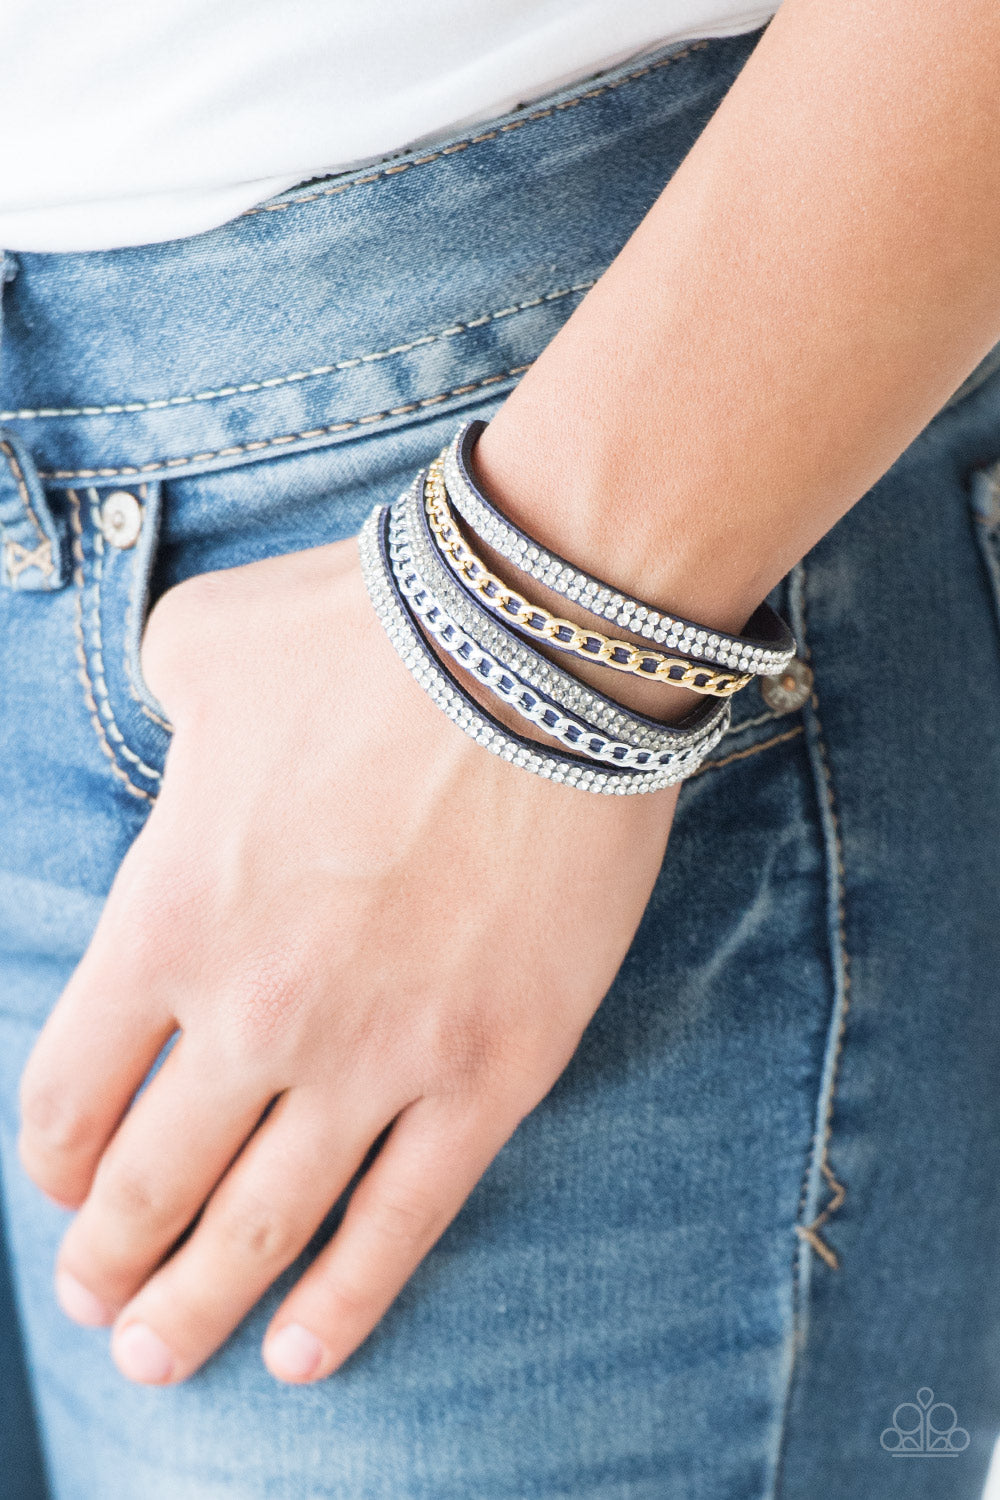 PRE-ORDER - Paparazzi Fashion Fiend - Blue - Bracelet - $5 Jewelry with Ashley Swint